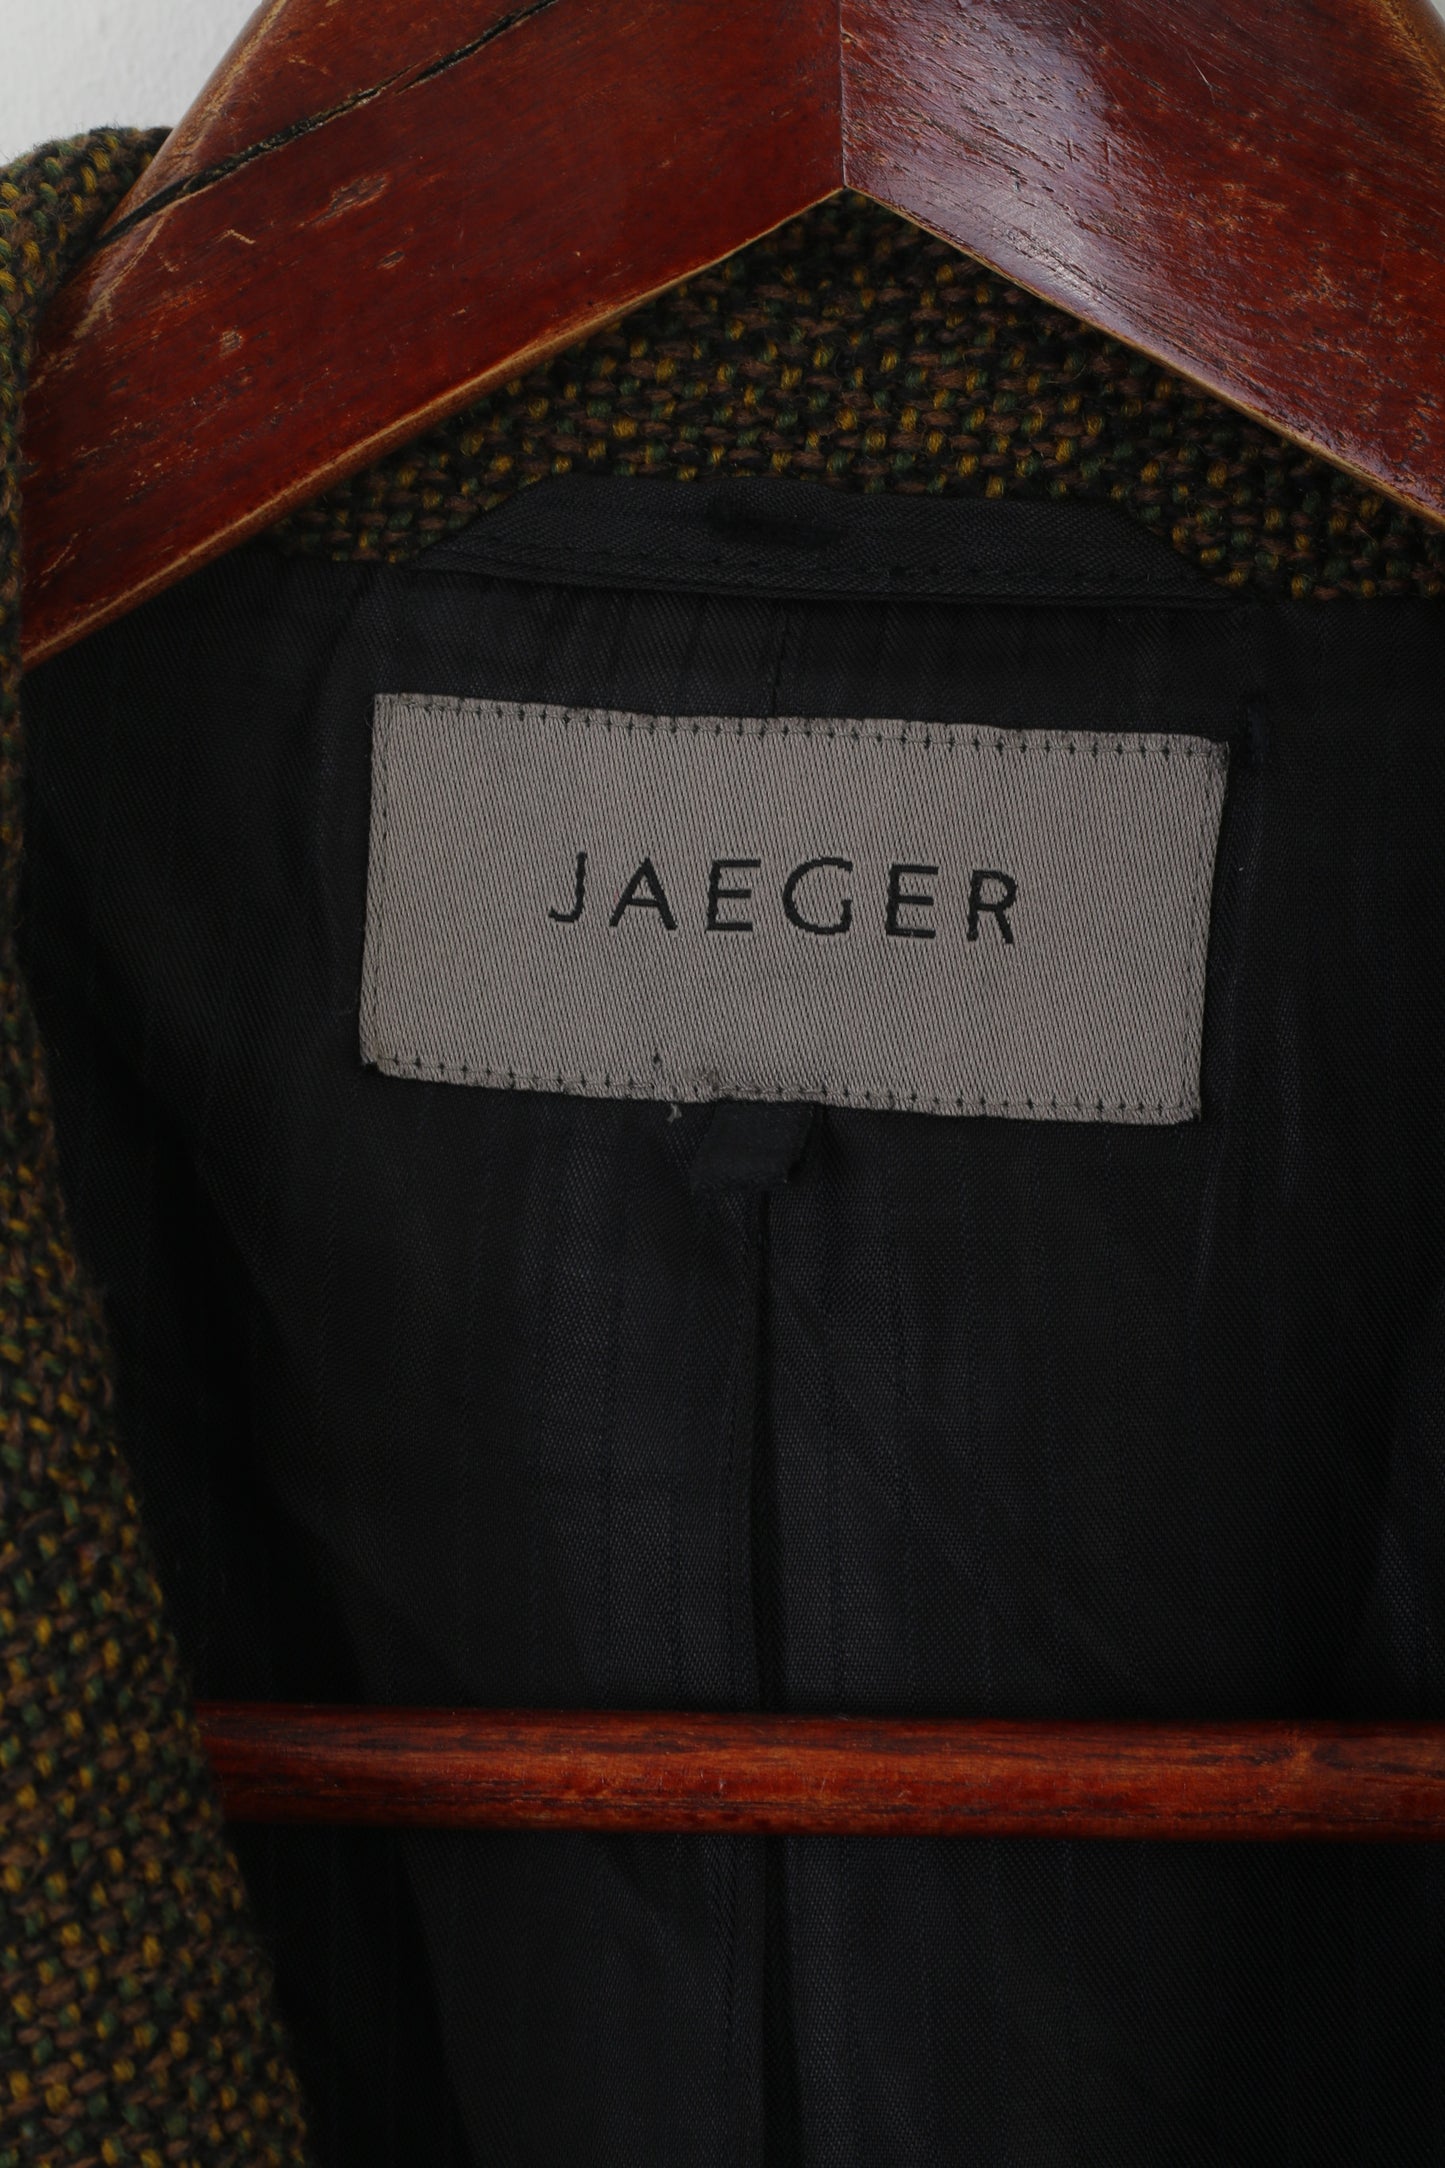 Jaeger Femmes 16 XL Blazer Vert Marron Laine vintage Épaulettes Veste Rétro